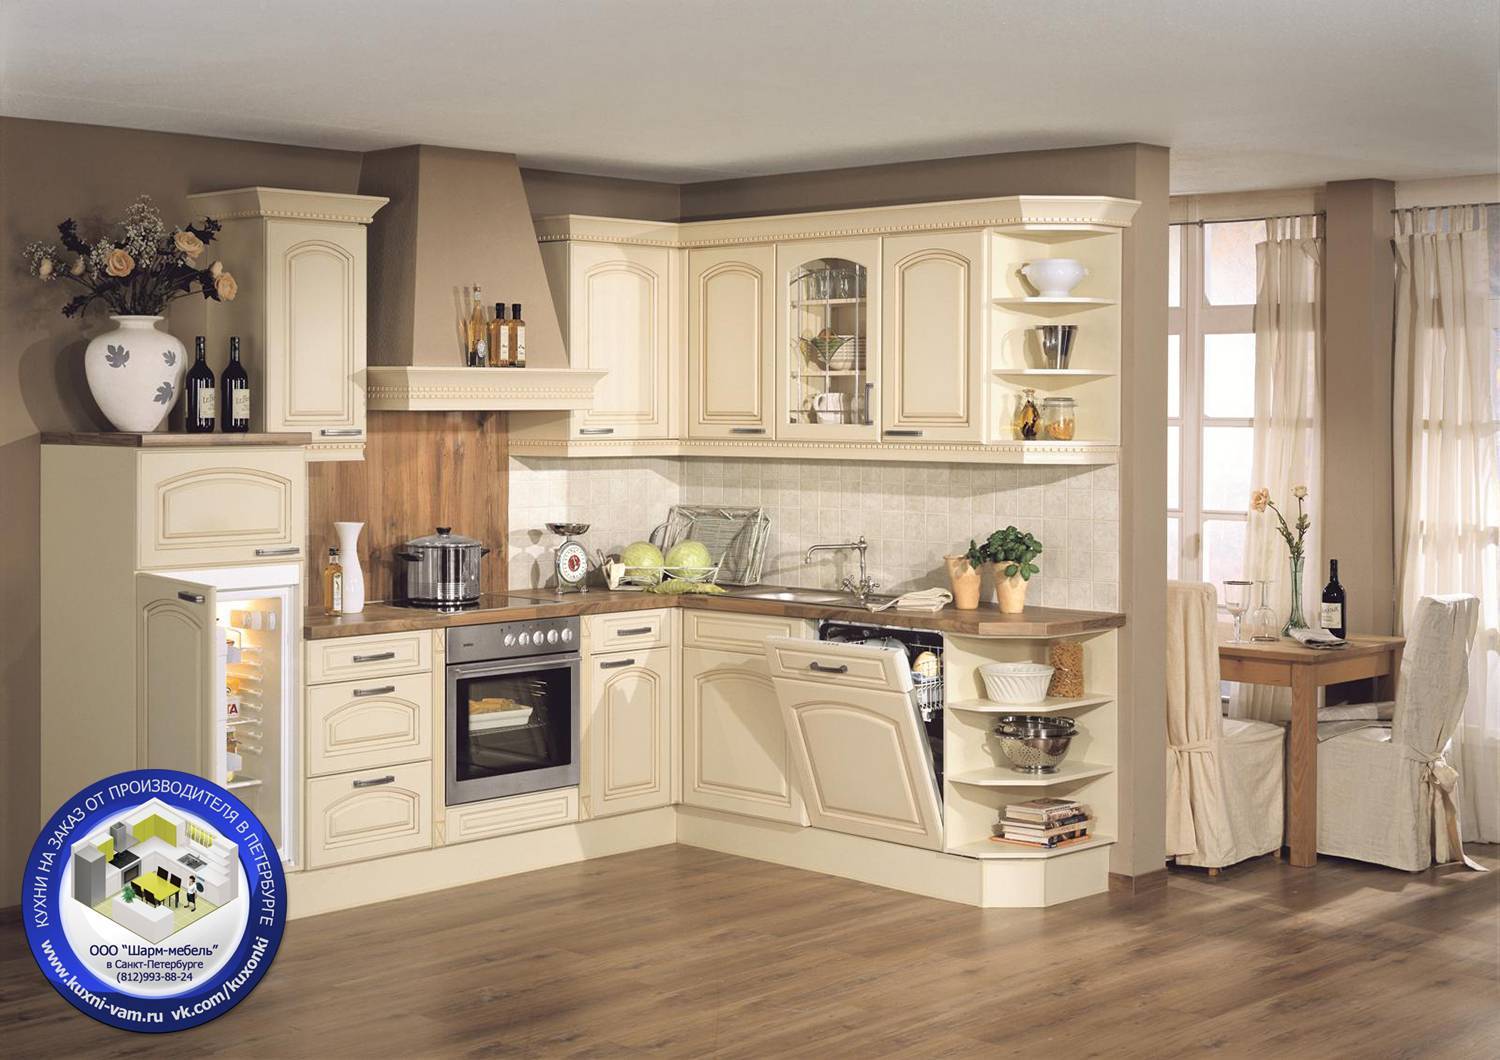 Узнайте обо всех особенностях кухонной мебели для стиля кантри